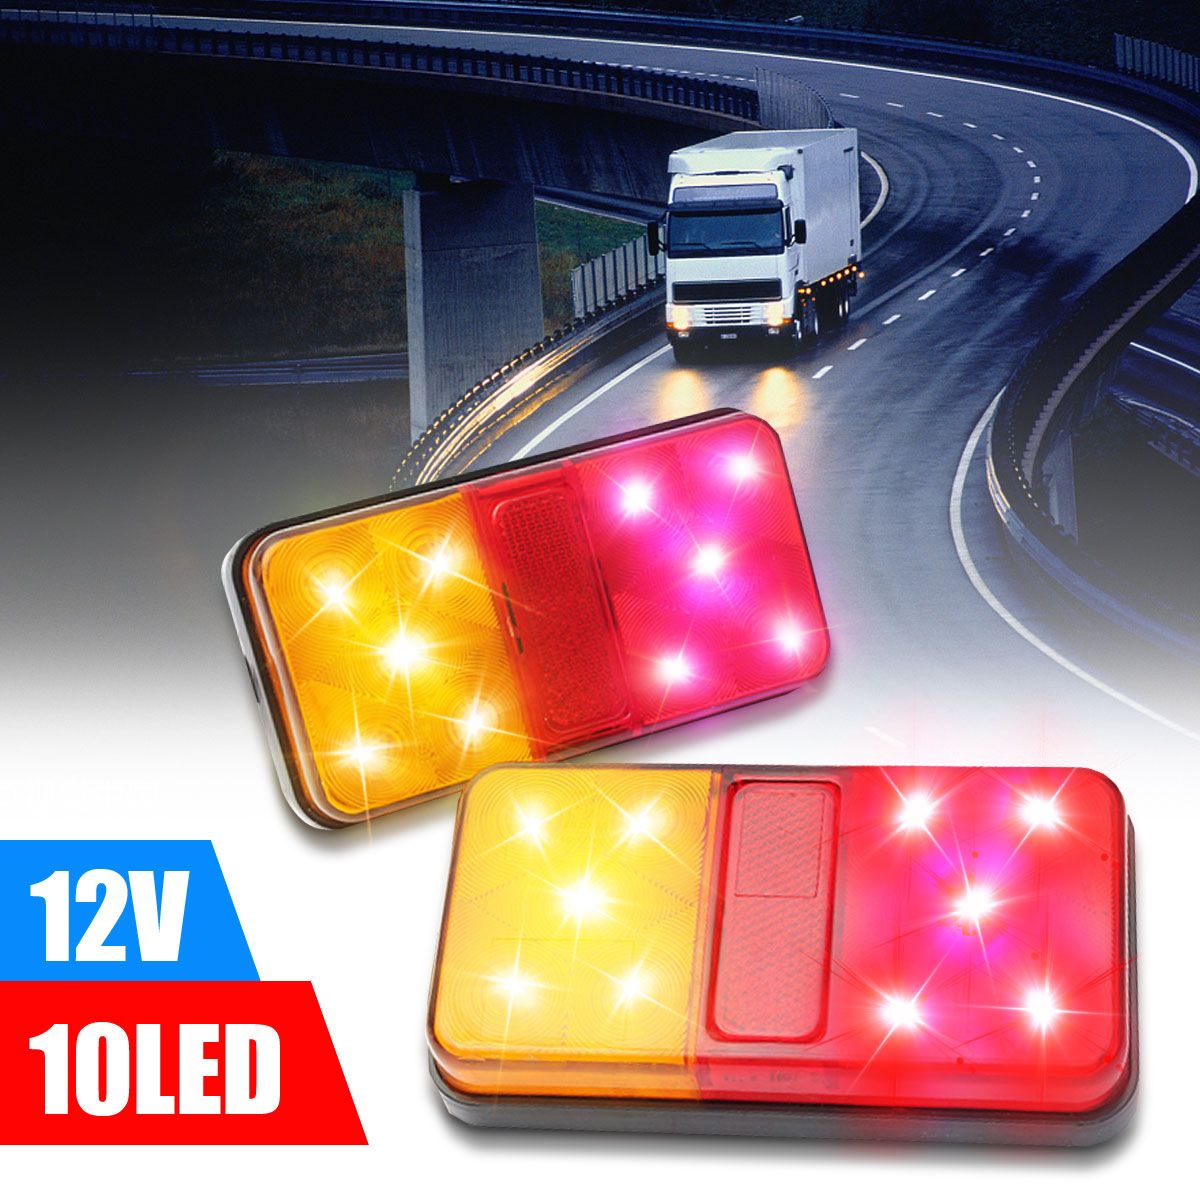 2PCS-12V-10LED-Truck-Car-Rear-Tail-Light-Stop-Indicator-Lamp-Taillight-956753